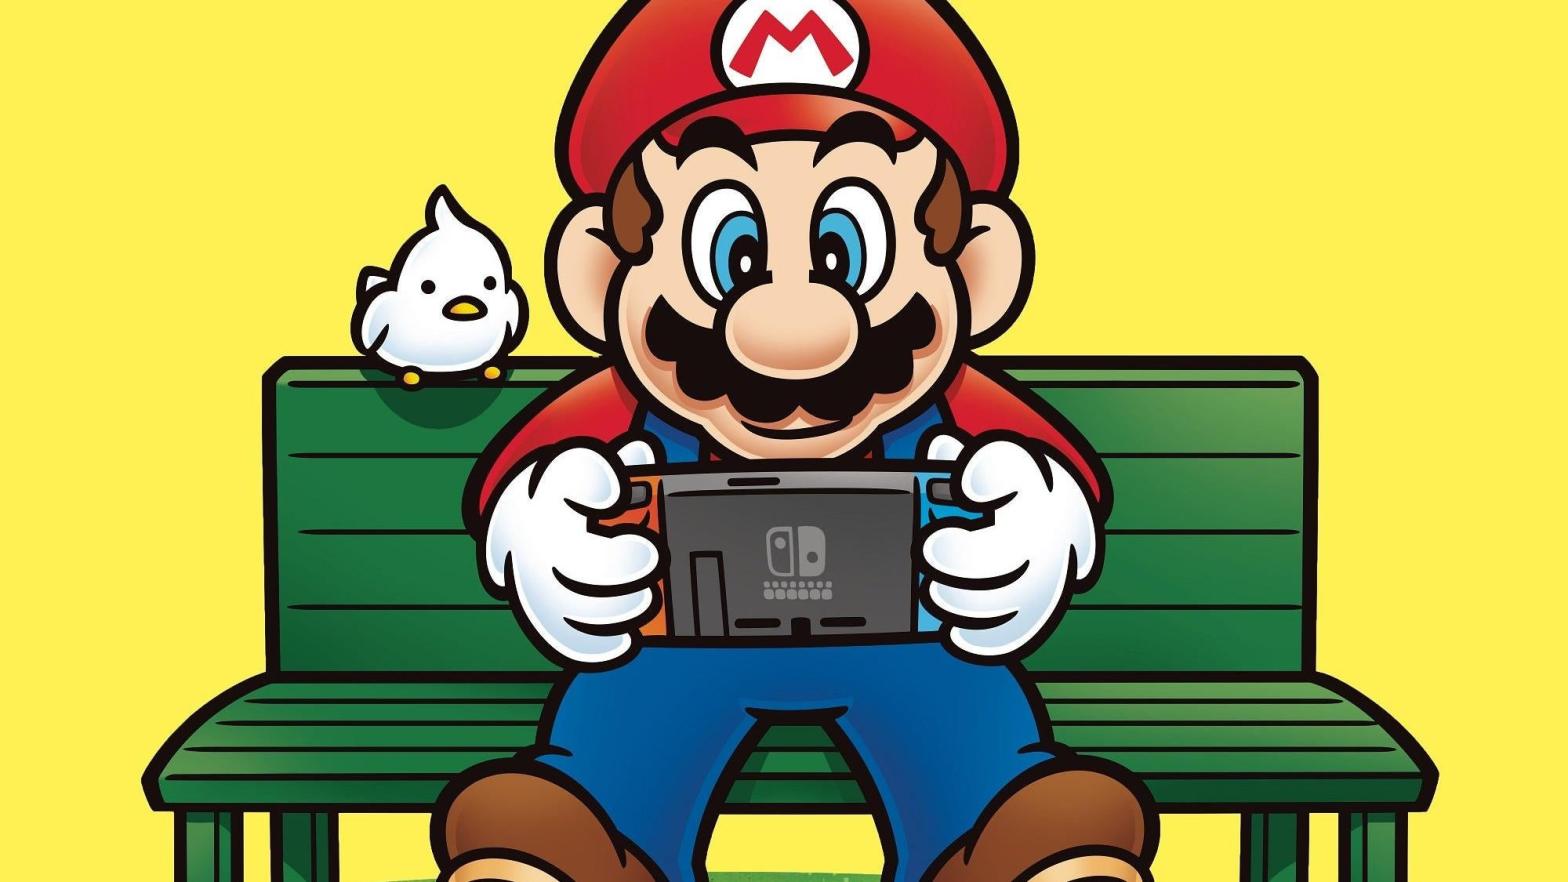 Image: Nintendo / Kotaku